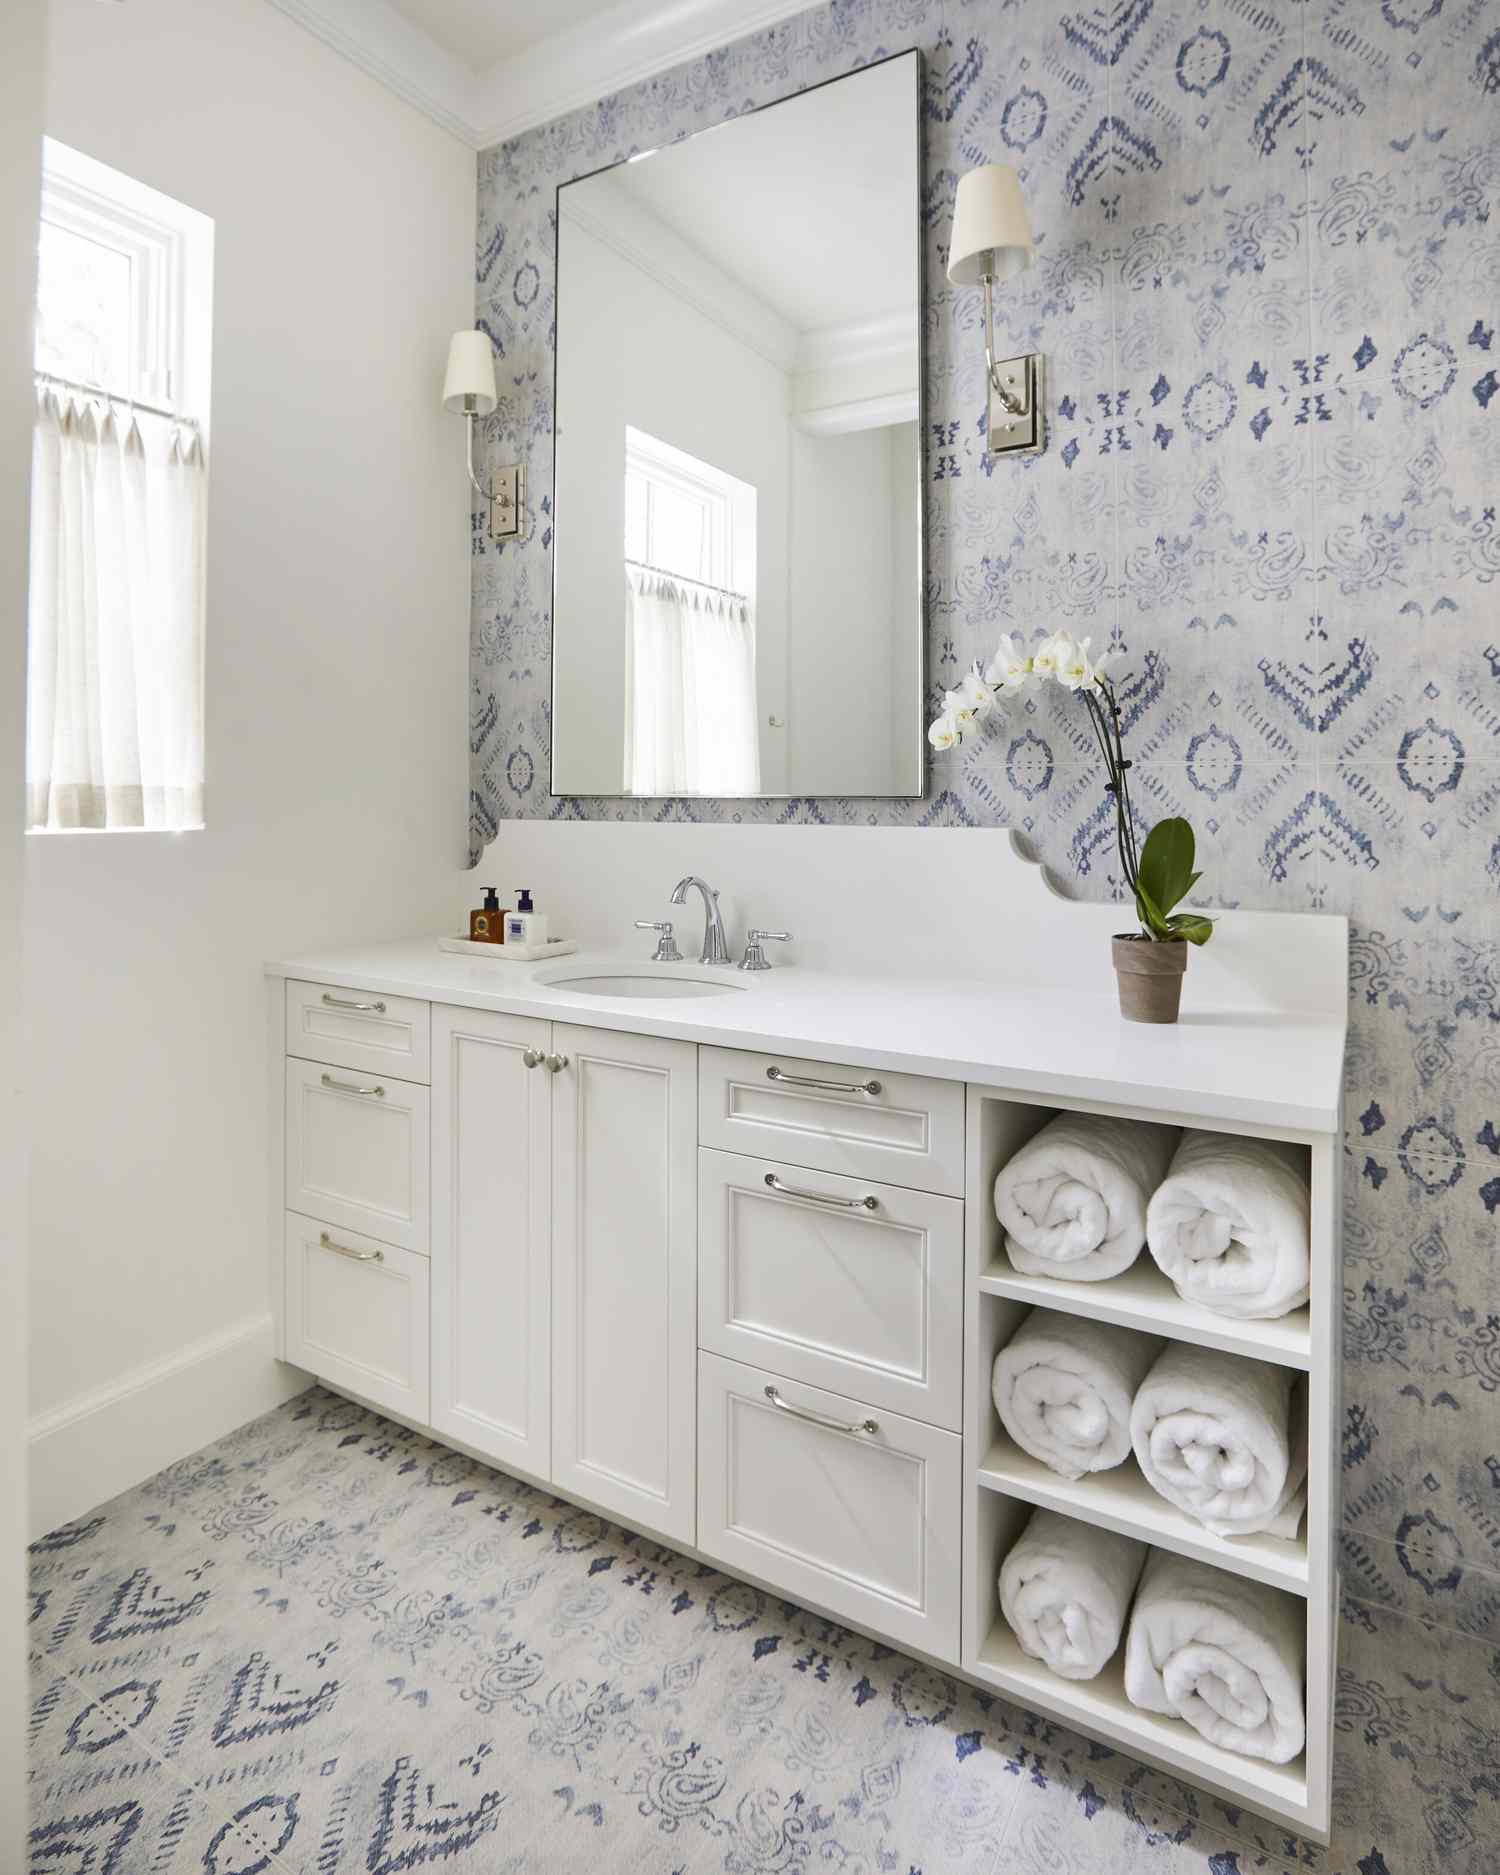 Um banheiro com o mesmo padrão de azulejos na parede e no piso